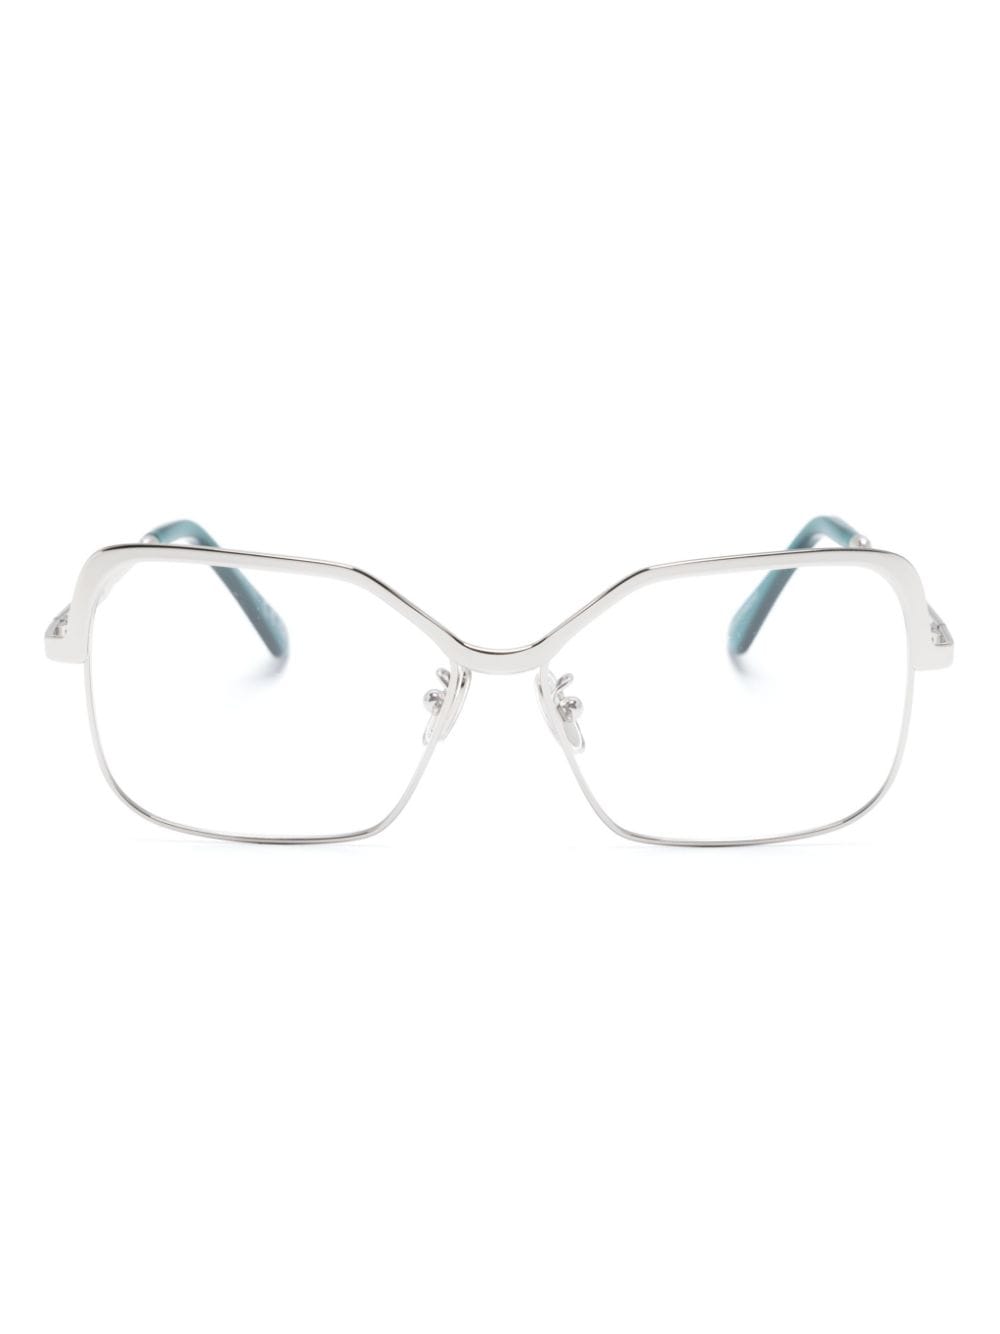 Marni Eyewear Brille mit eckigem Gestell - Silber von Marni Eyewear